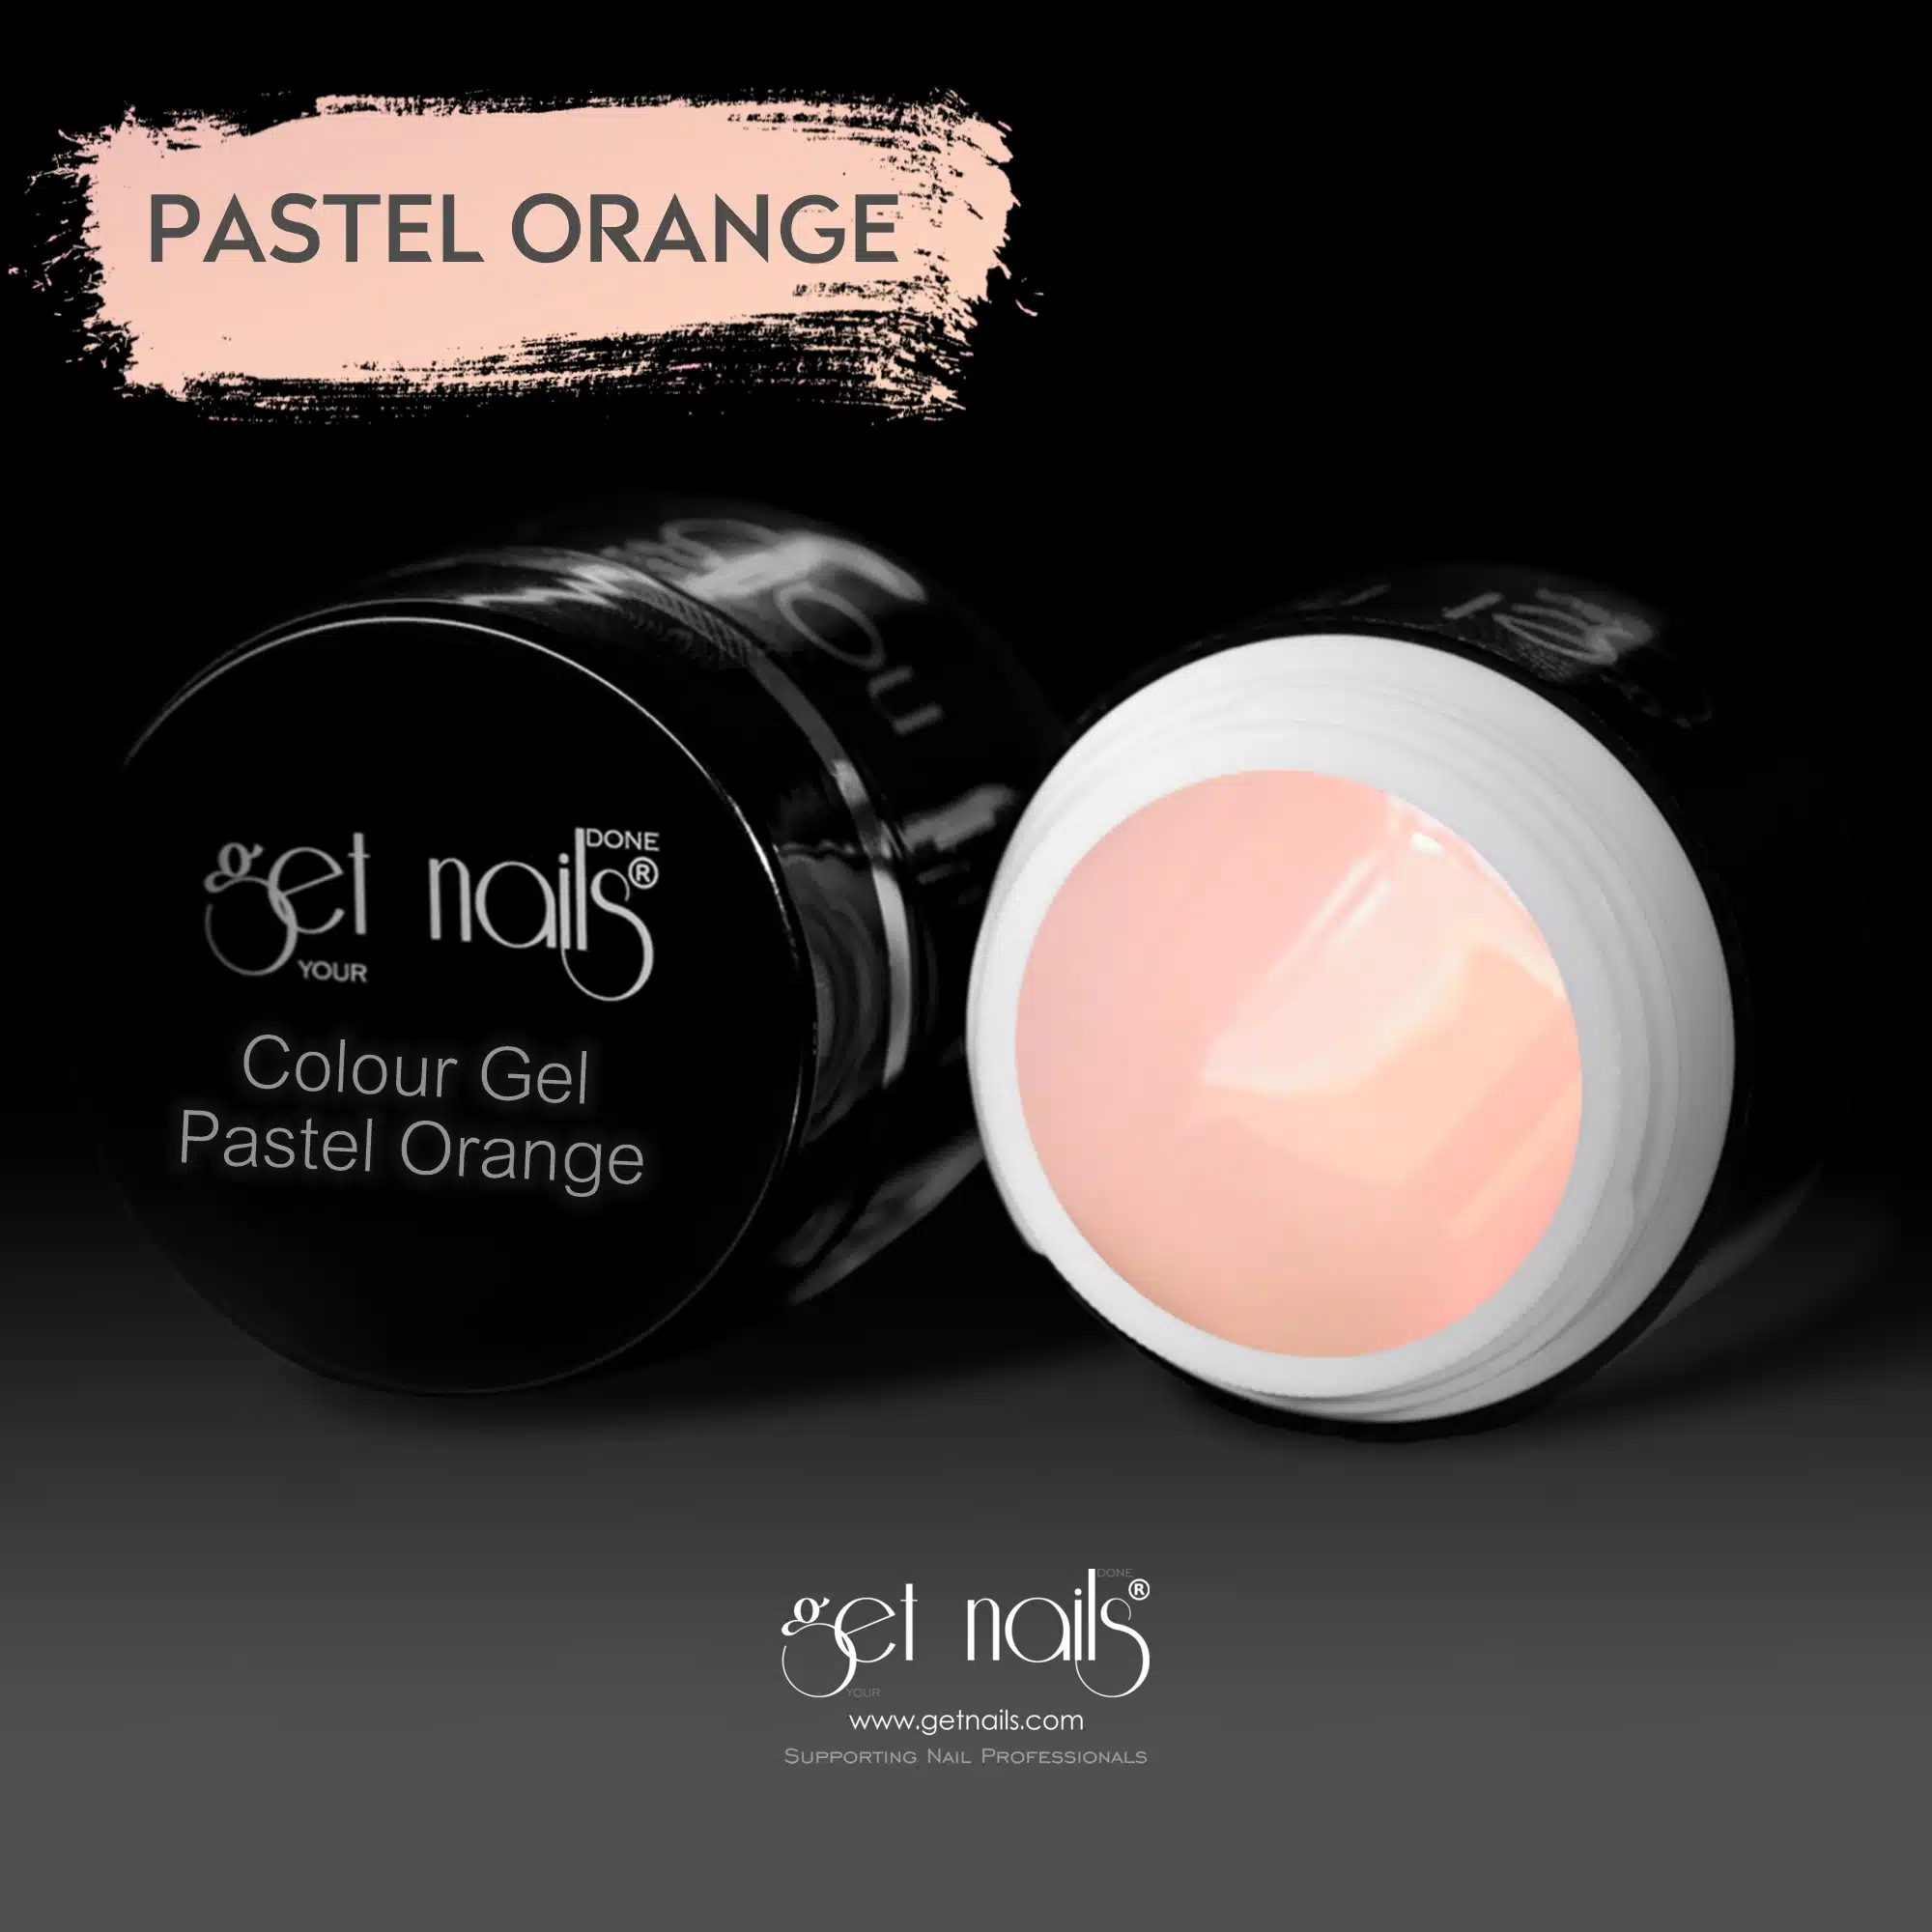 Get Nails Austria - Colour Gel Pastel Orange 5g